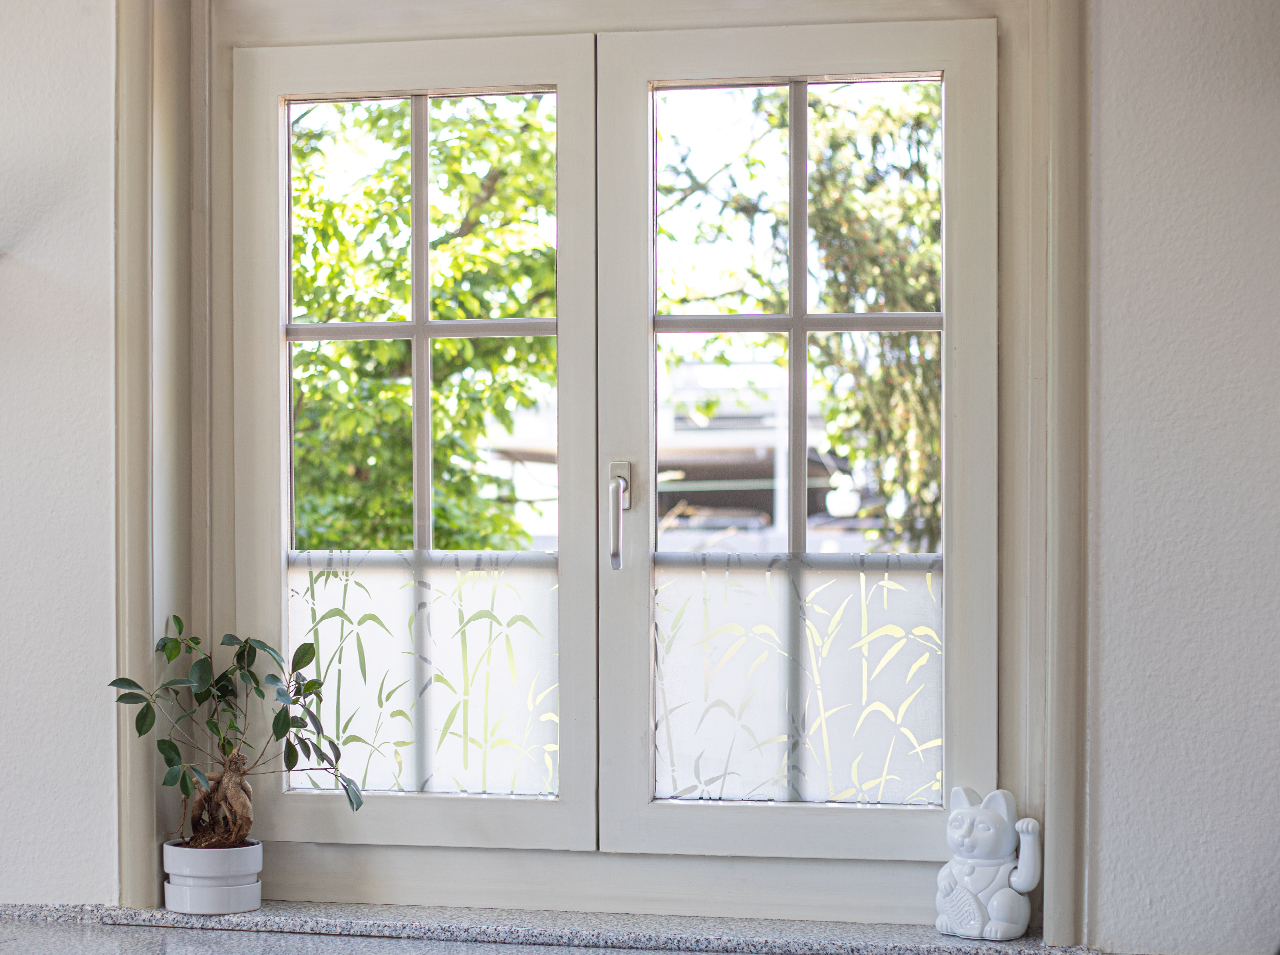 Fenster mit blickdichter Fensterfolie in Bambusoptik für Sichtschutz beklebt.